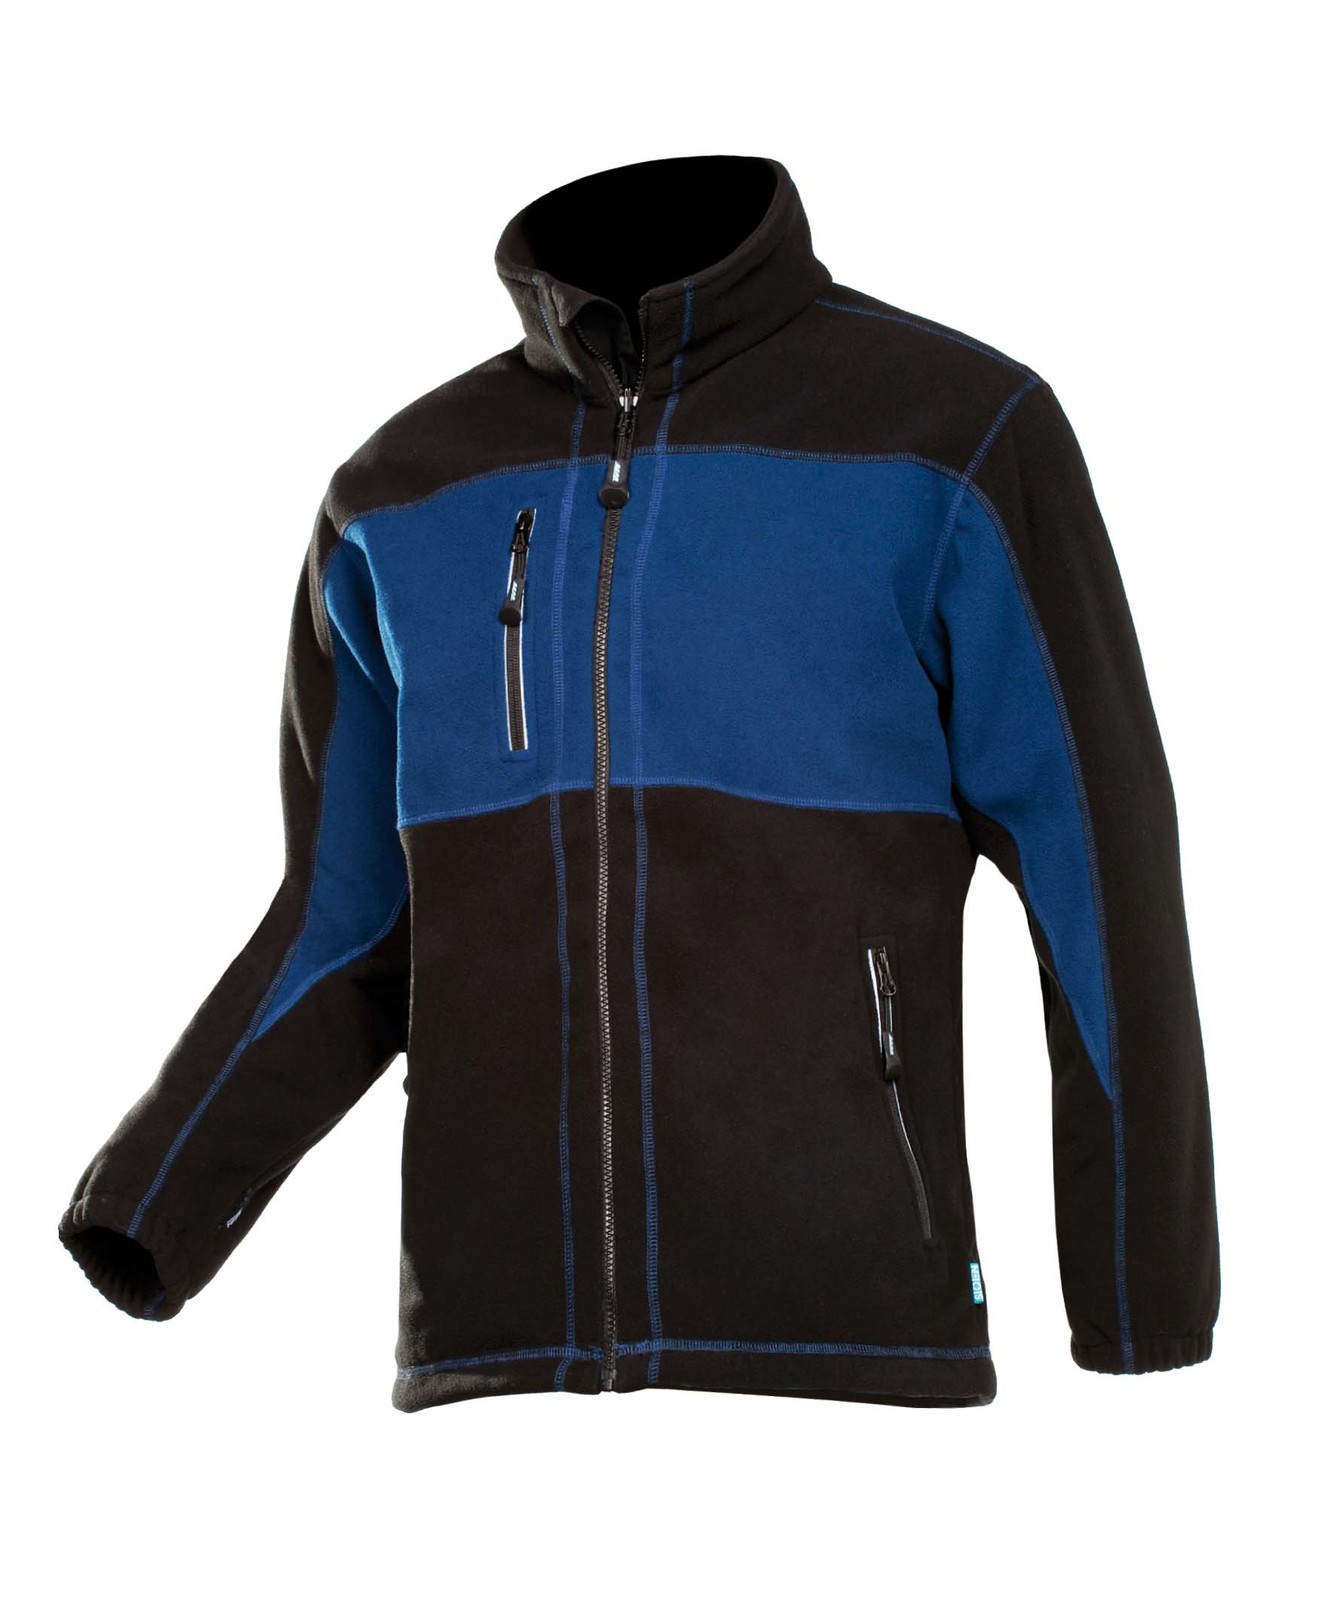 Fleece bunda Durango pánska - veľkosť: M, farba: modrá/čierna